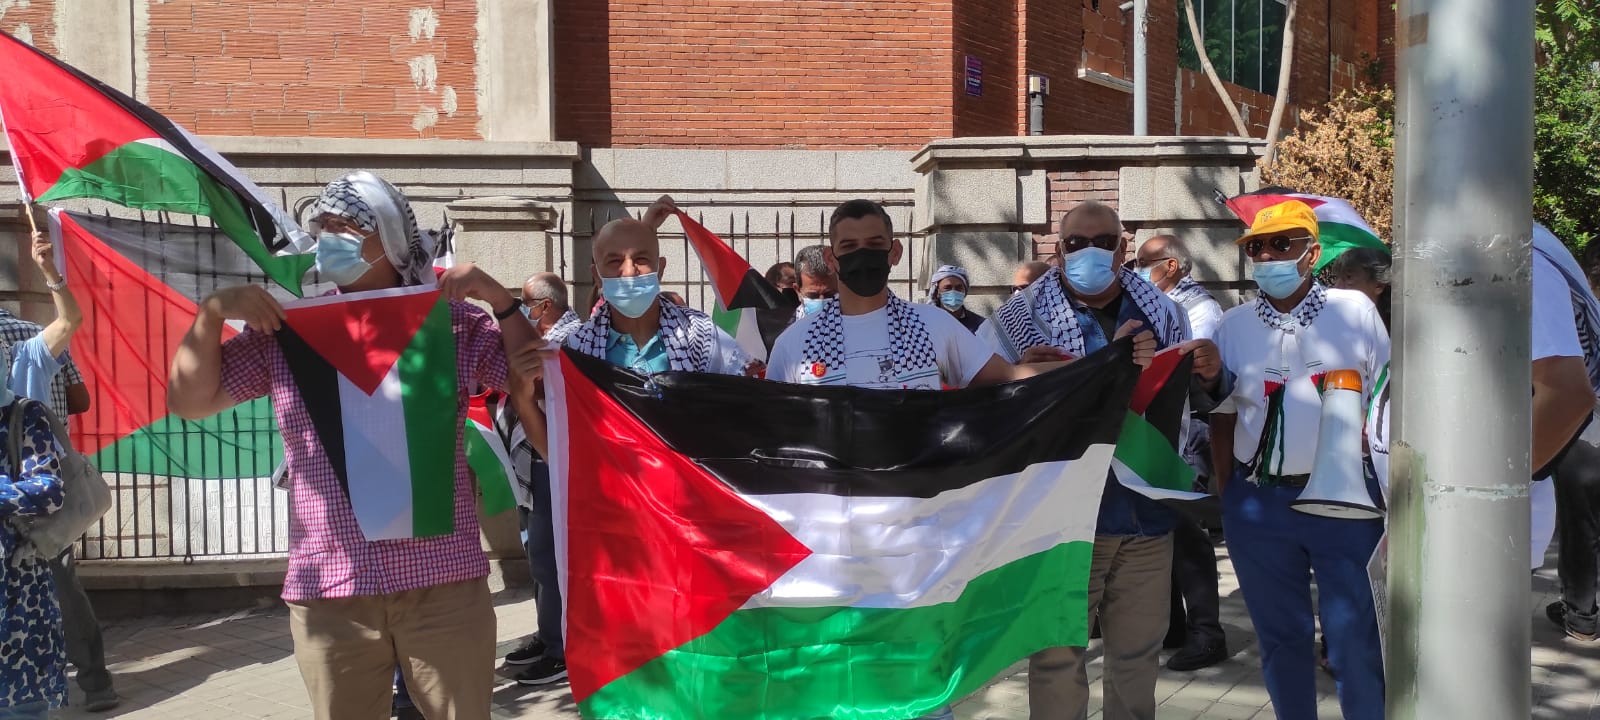 اتحاد الشباب الأوروبي الفلسطيني فرع إسبانيا يشارك بالوقفة التضامنية مع الأسرى الأبطال1